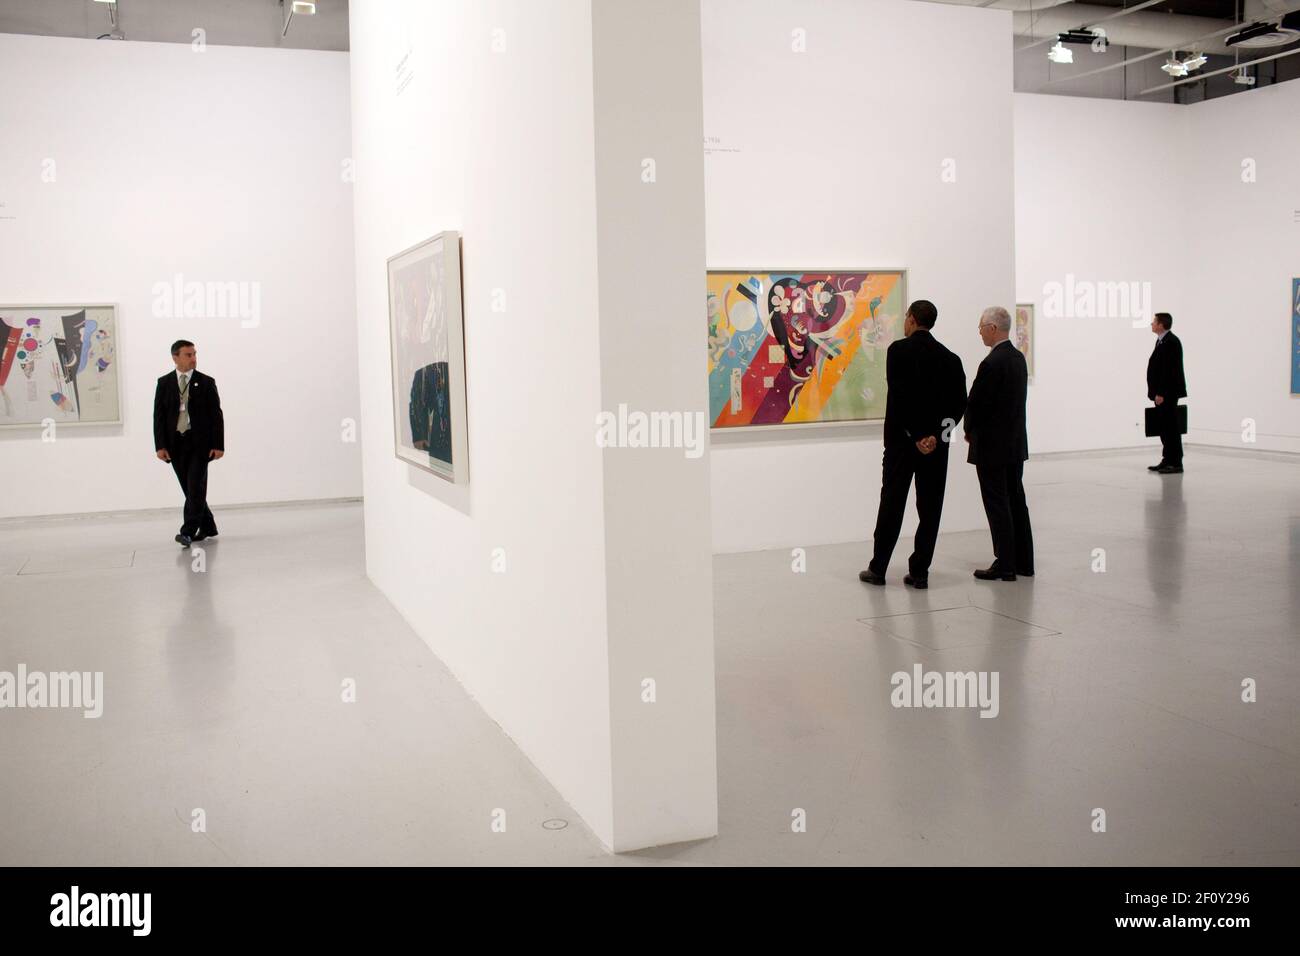 El presidente Barack Obama visita el Museo de Arte moderno del Centro Pompidou en París, 6 de junio de 2009 Foto de stock